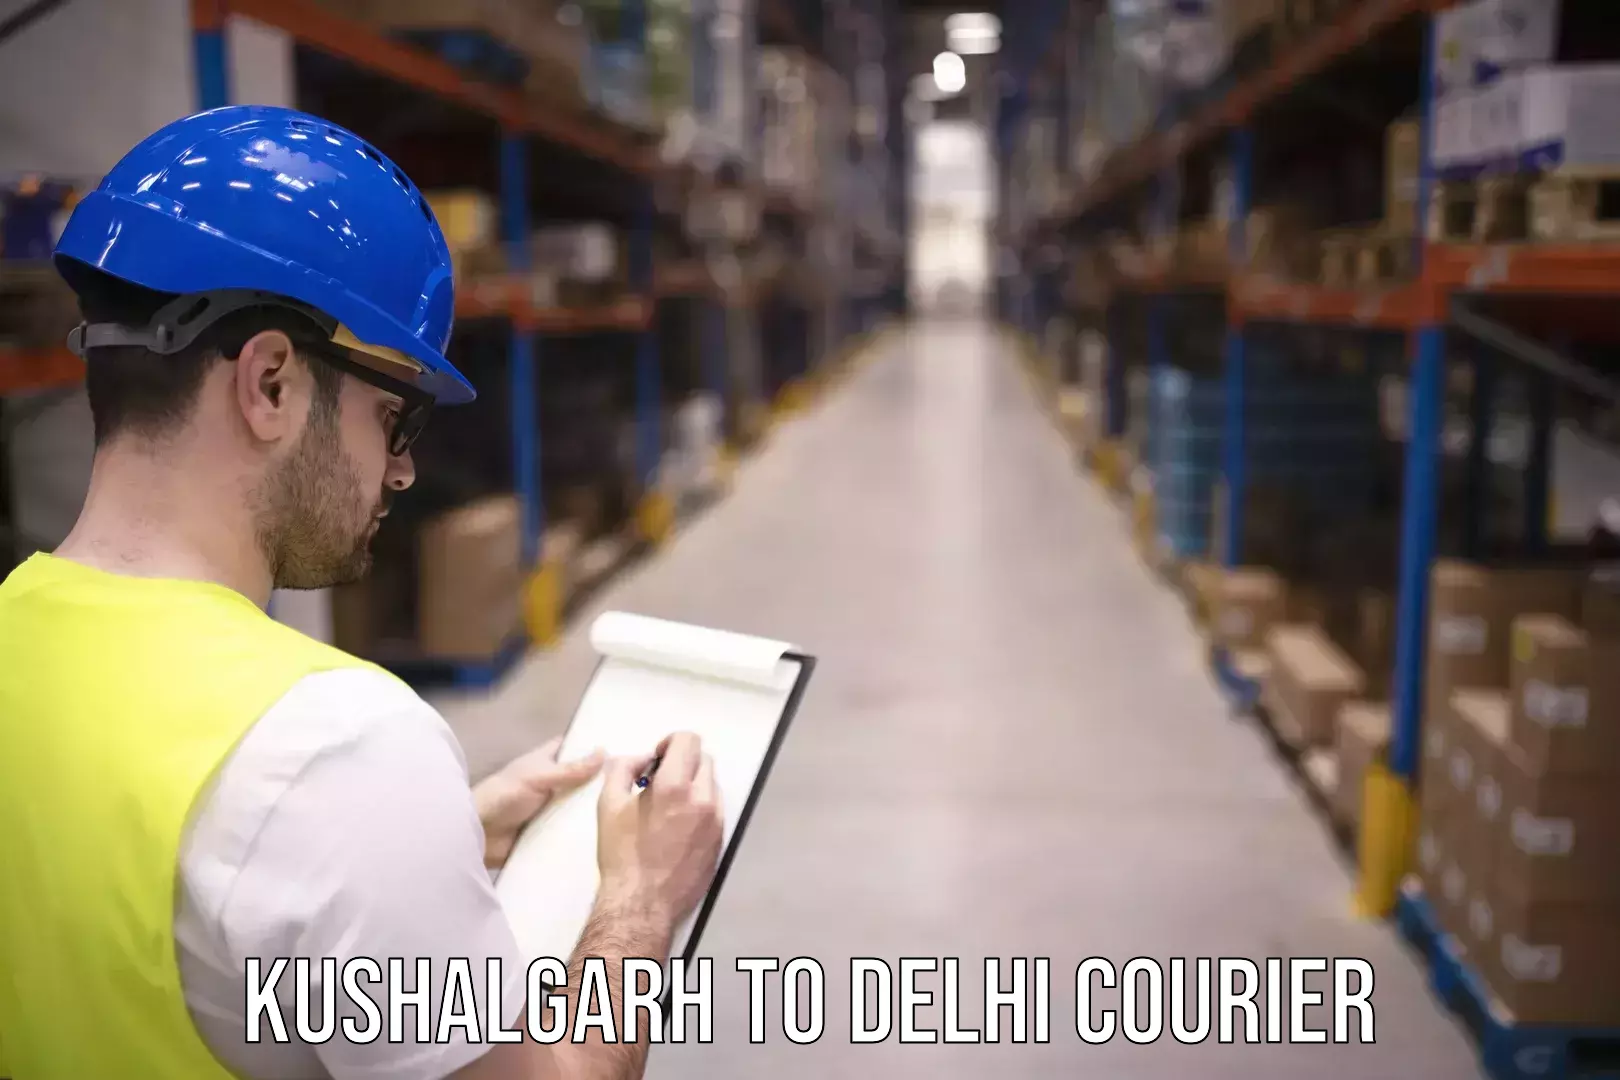 Personal courier services Kushalgarh to Jamia Millia Islamia New Delhi